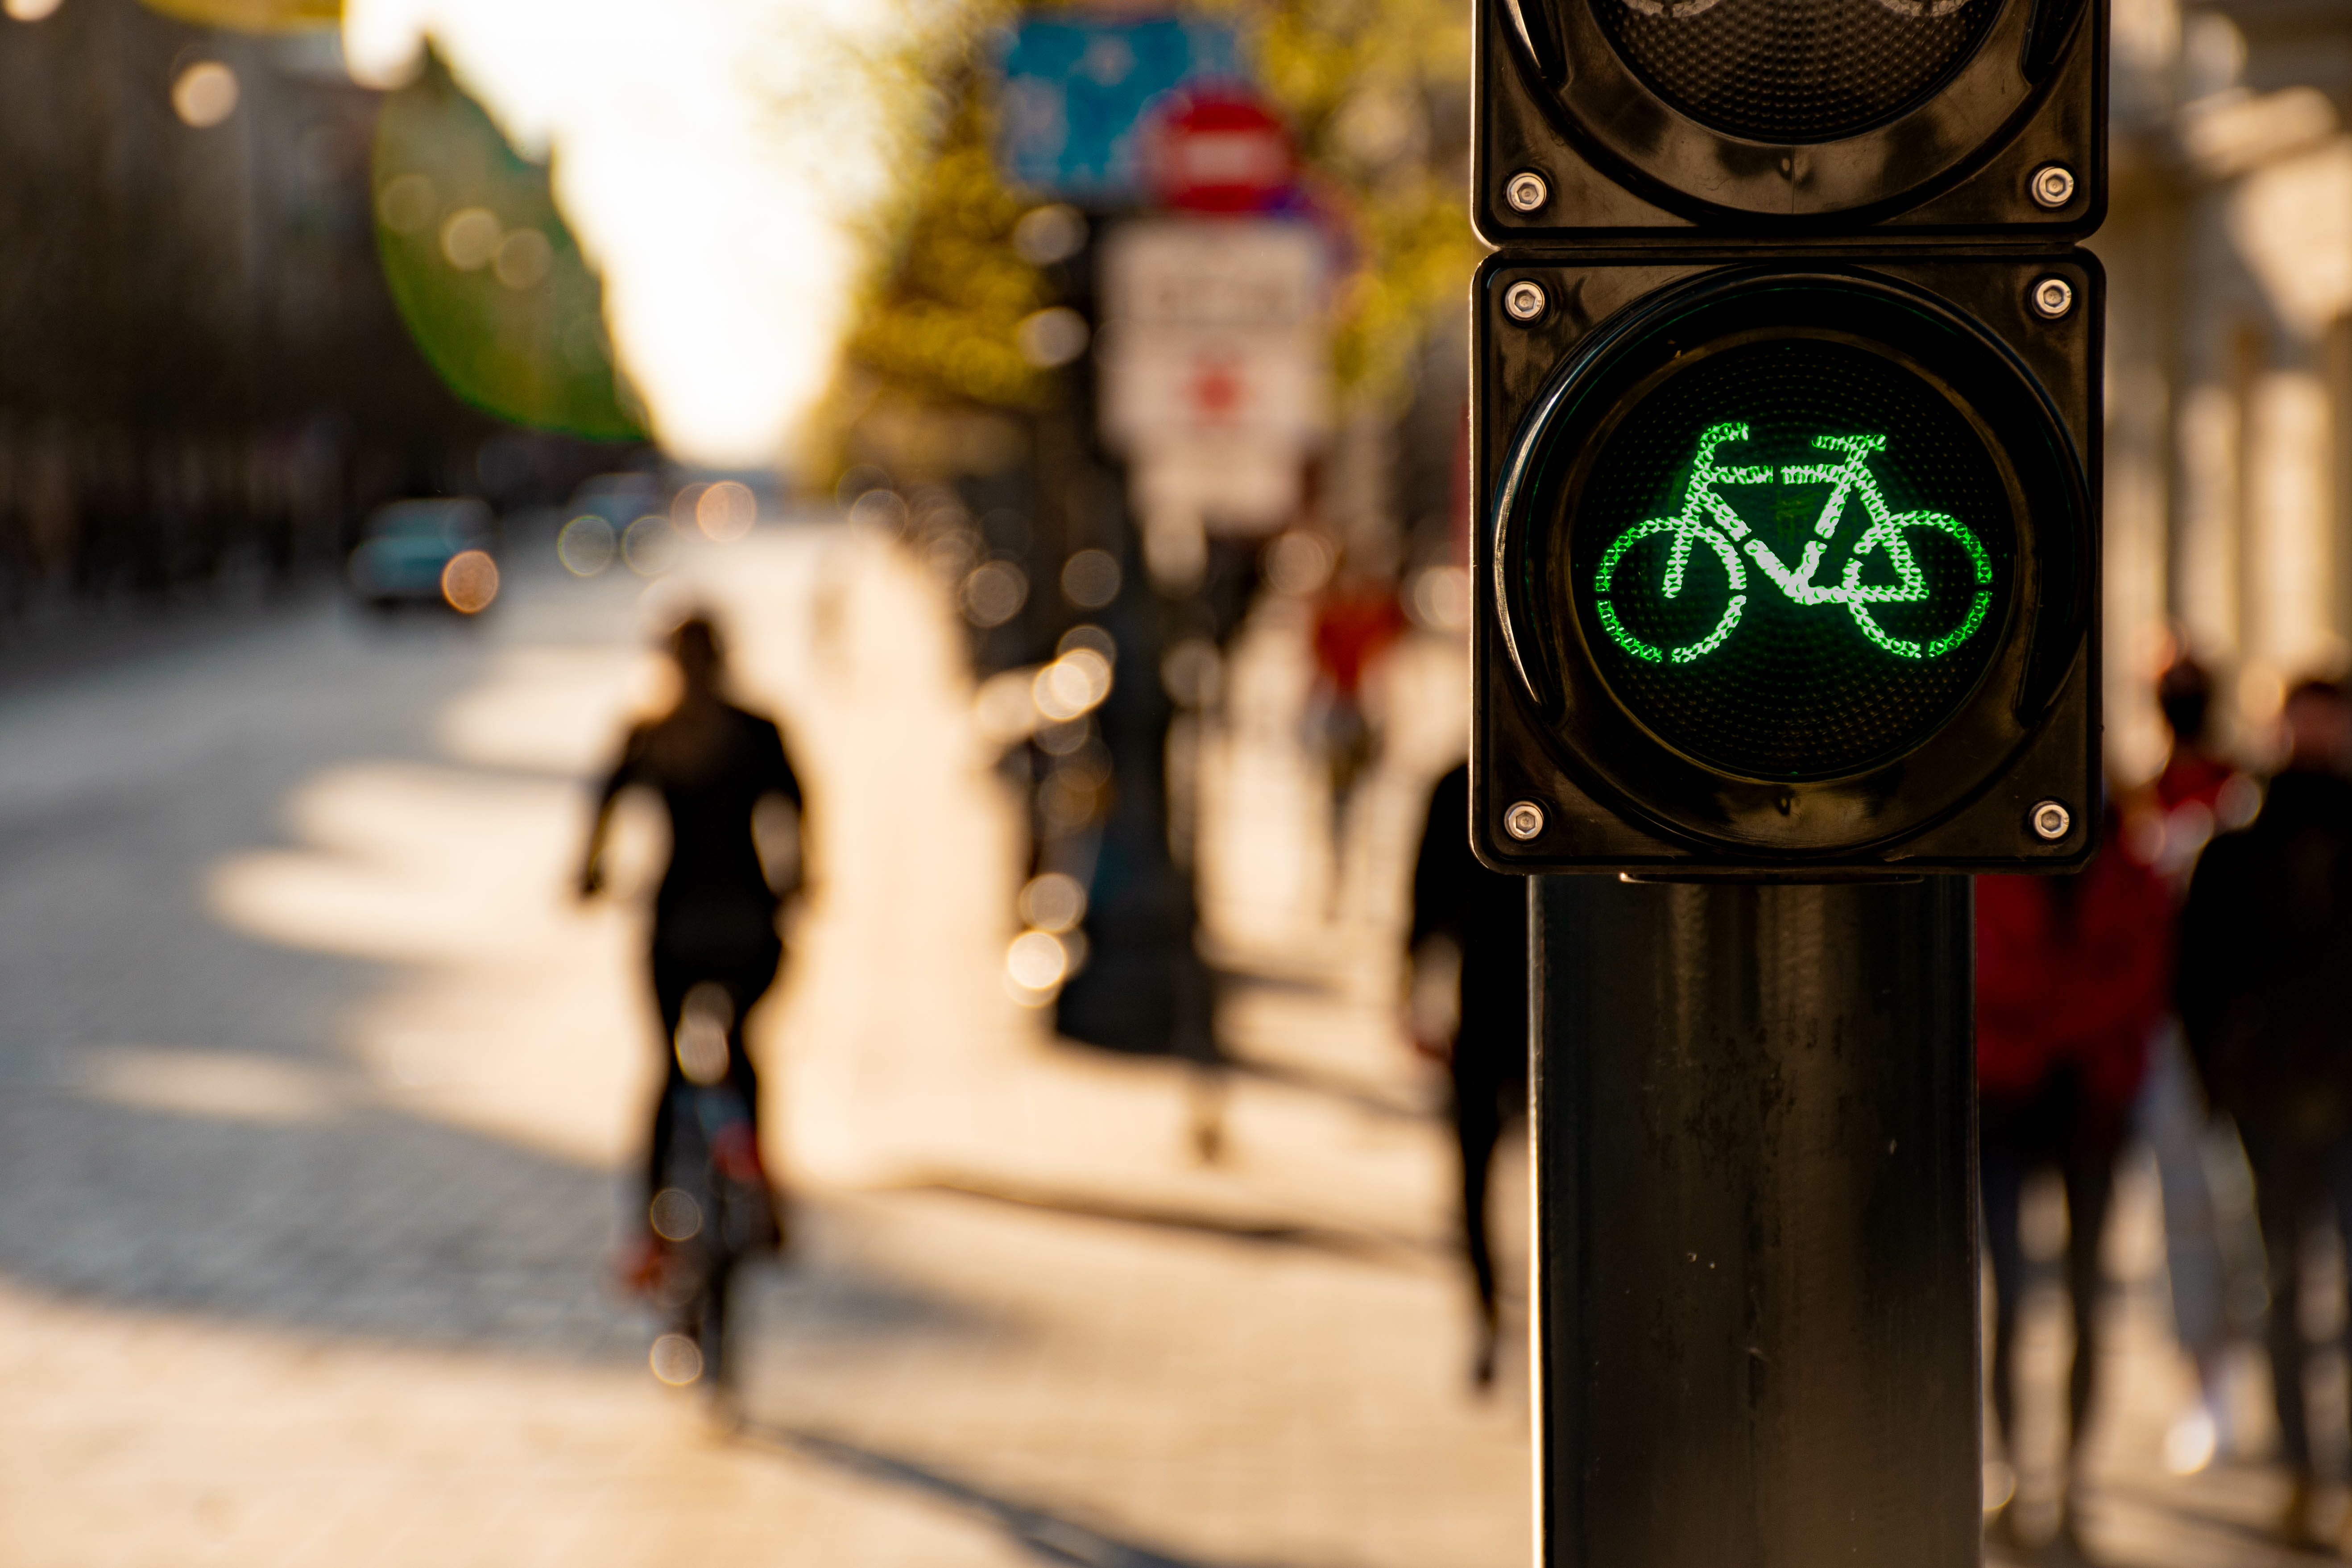 ttraffic signal with bike symbol